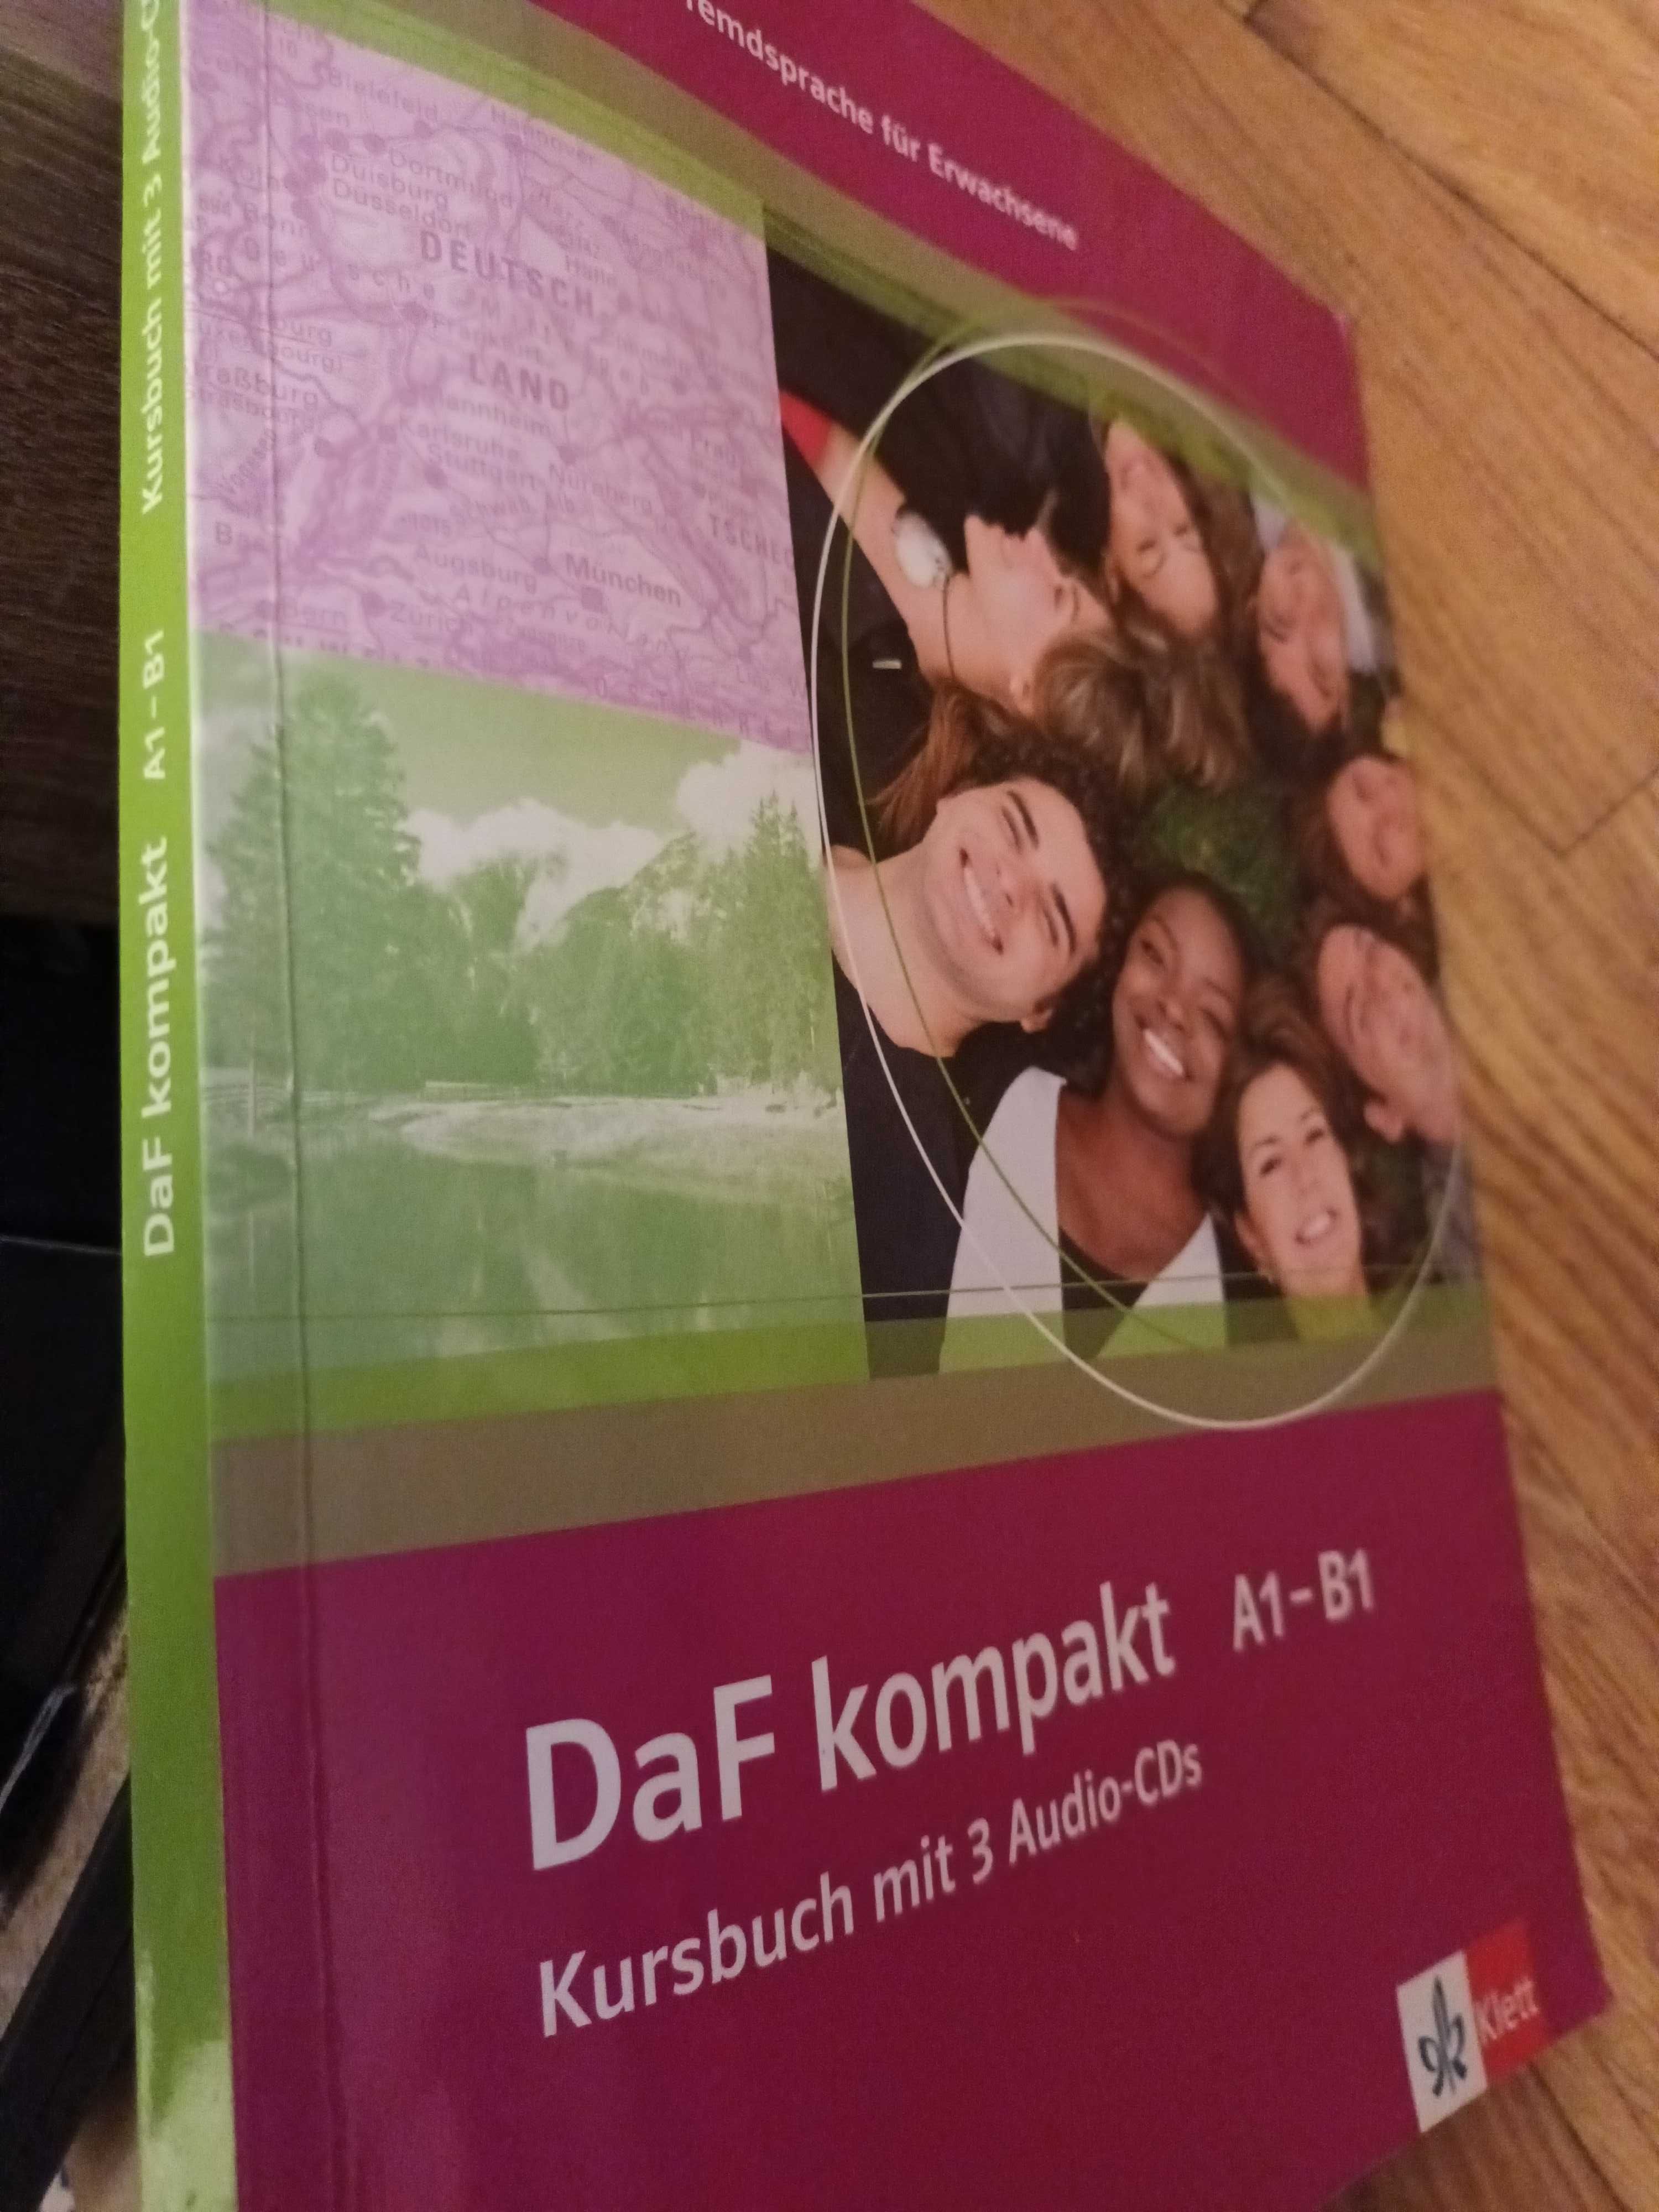 DaF kompakt A1-B1 Kursbuch mit 3 Audio-CDs
Niemiecki dla dorosłych